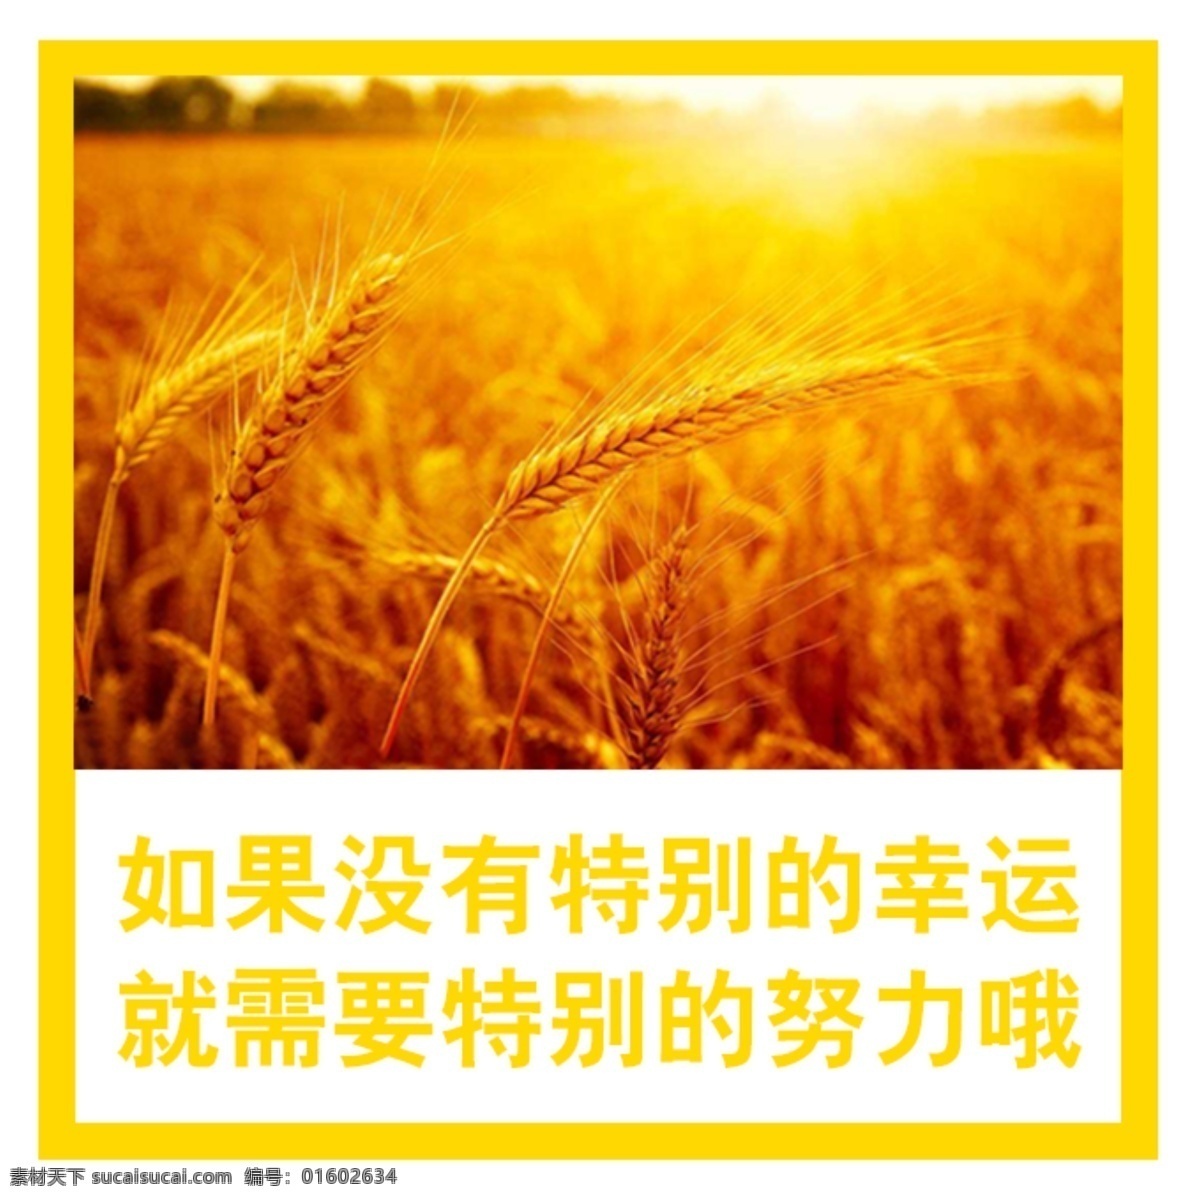 秋收 阳光 照耀 谷子 小麦 自然风景 自然景观 自然风光